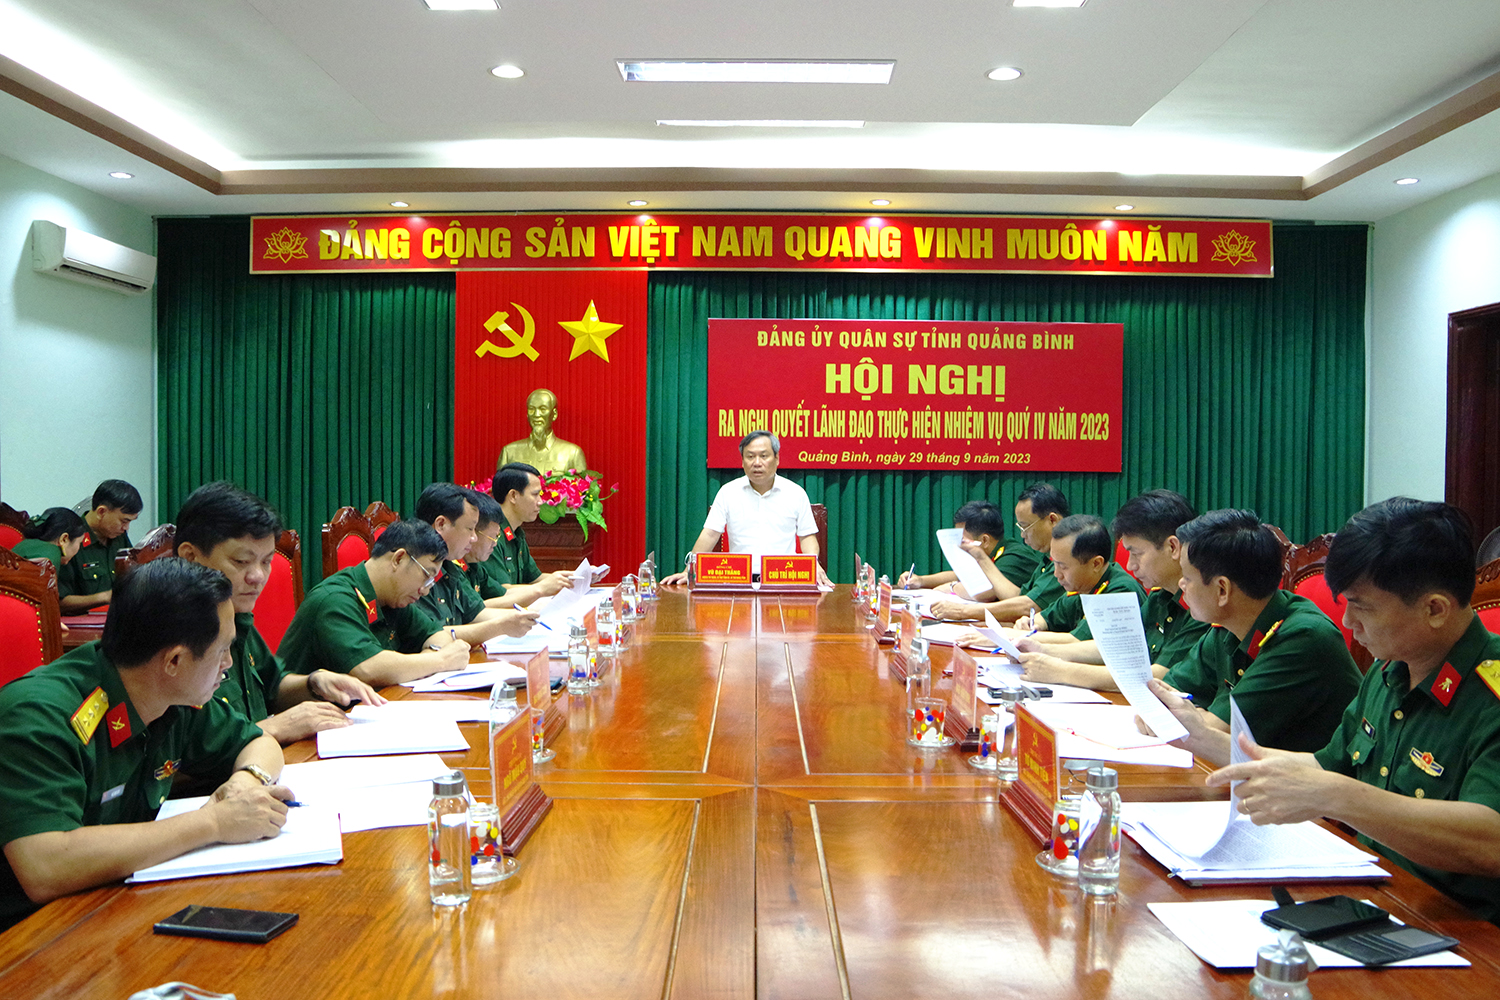 Đảng ủy Quân sự tỉnh: Quyết tâm lãnh đạo thực hiện thắng lợi nhiệm vụ, chỉ tiêu năm 2023